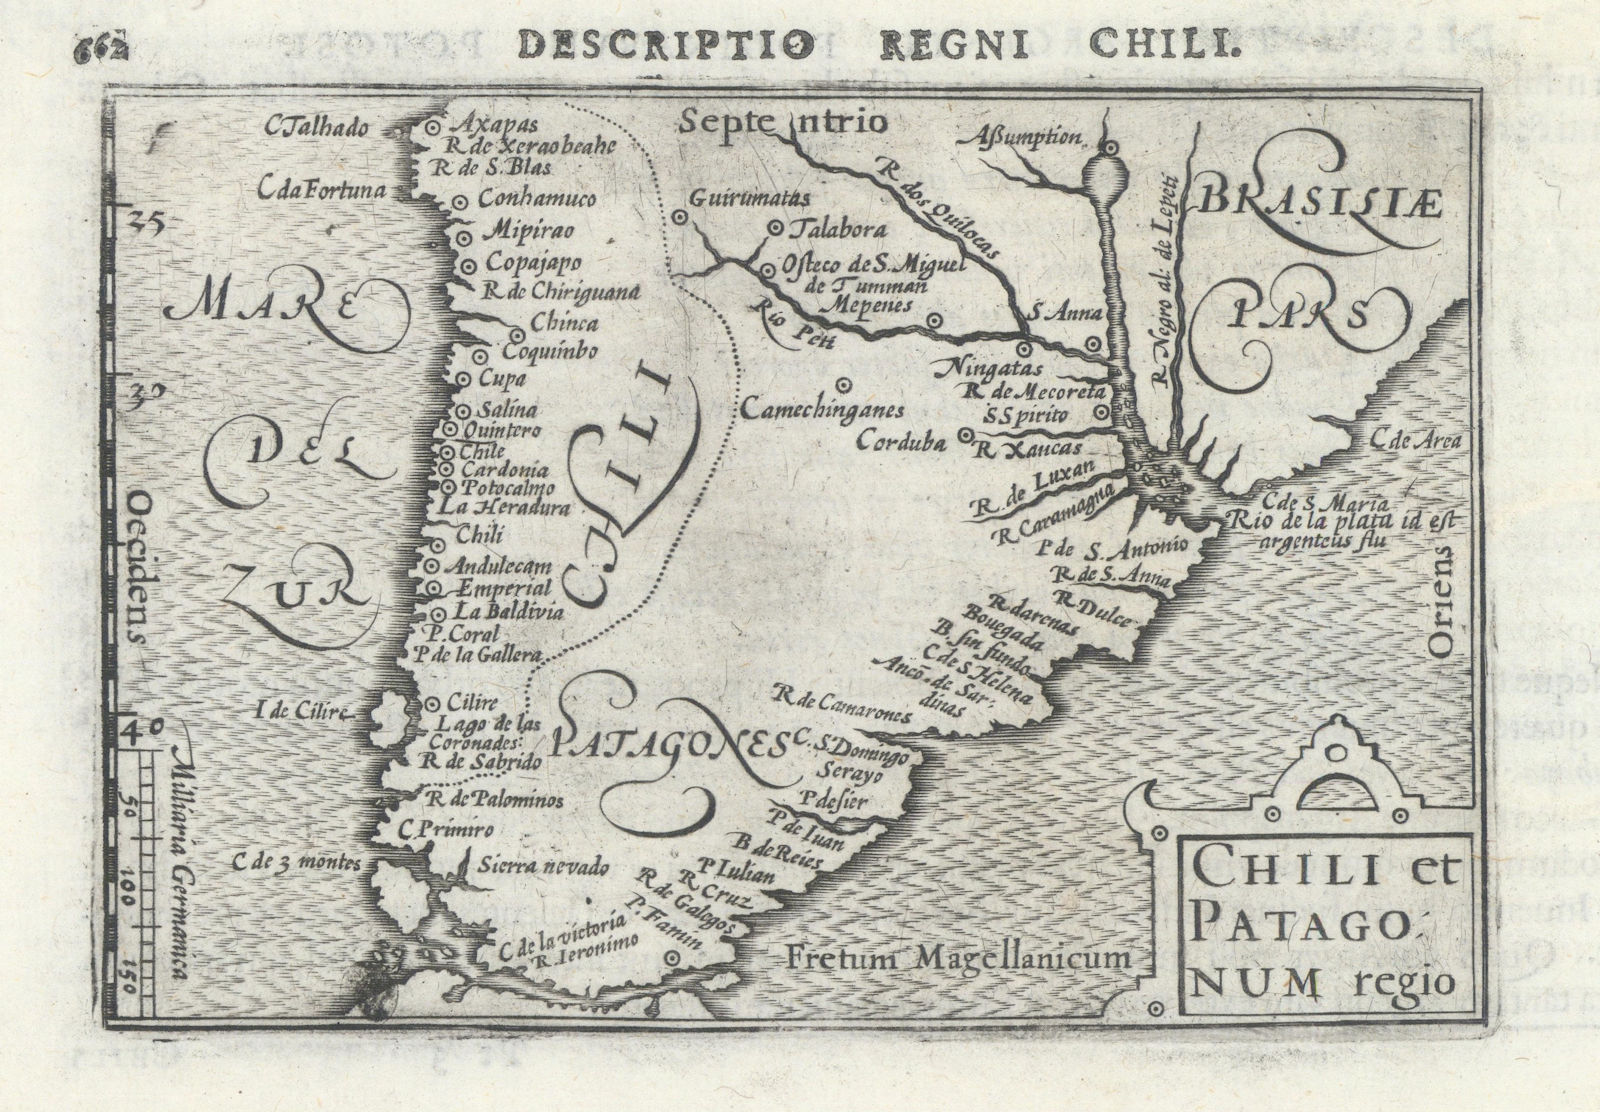 Chili et Patagonum regio by Bertius/Langenes. Chile Patagonia Argentina 1603 map